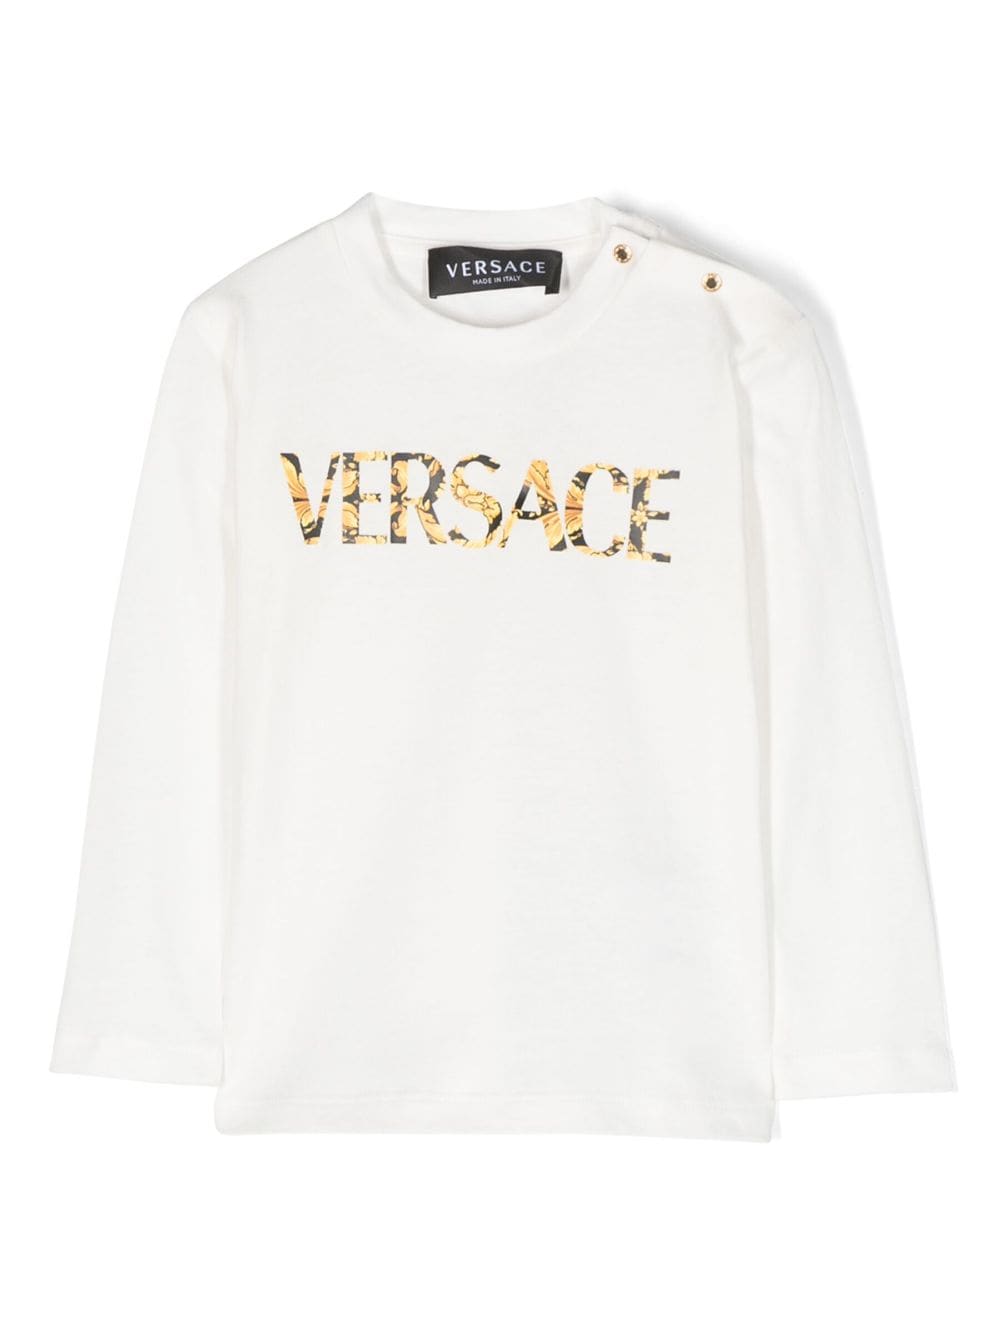 Versace Kids long sleeve t-shirt